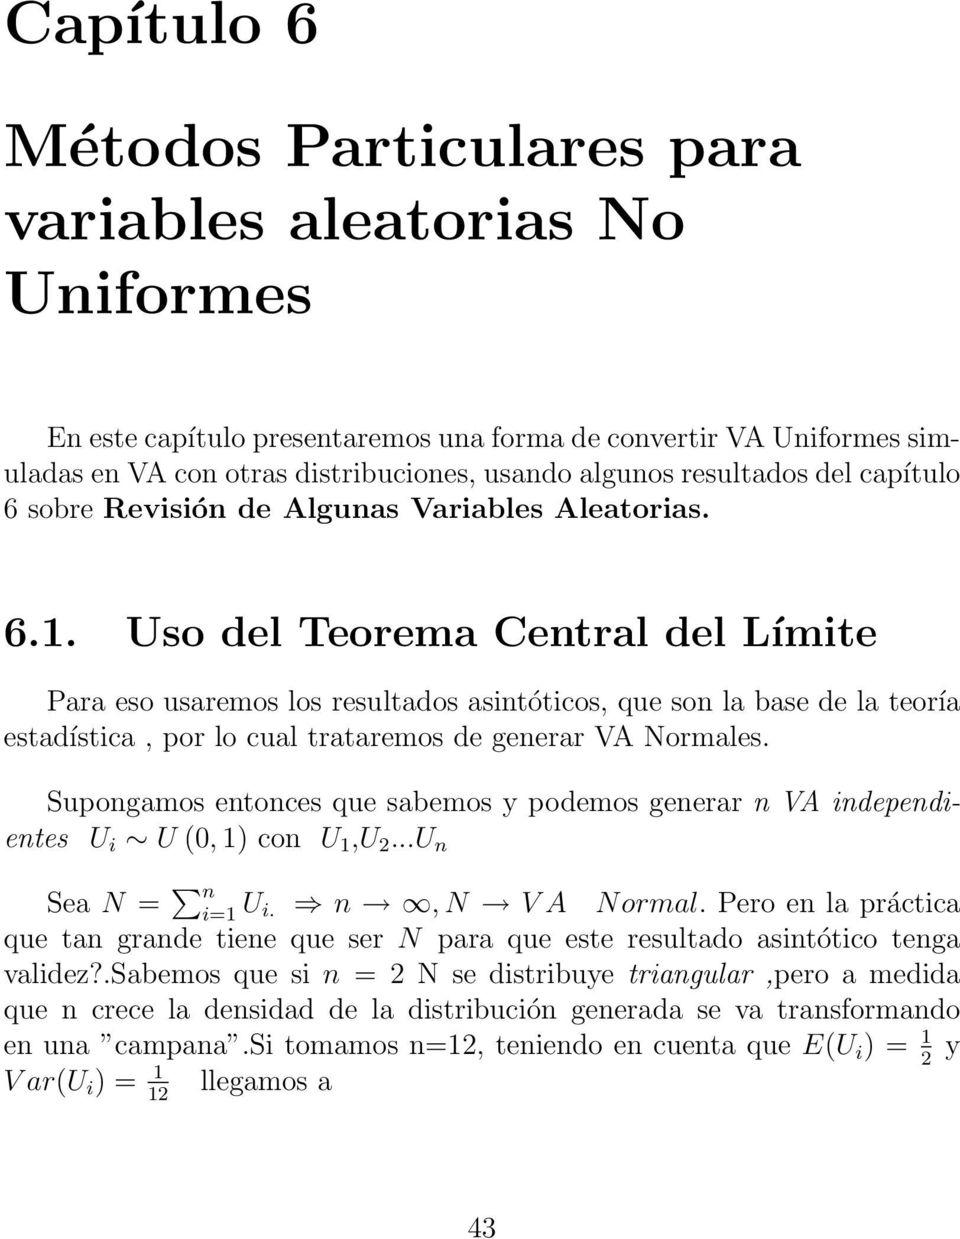 Uso del Teorema Central del Límite Para eso usaremos los resultados asintóticos, que son la base de la teoría estadística, por lo cual trataremos de generar VA Normales.